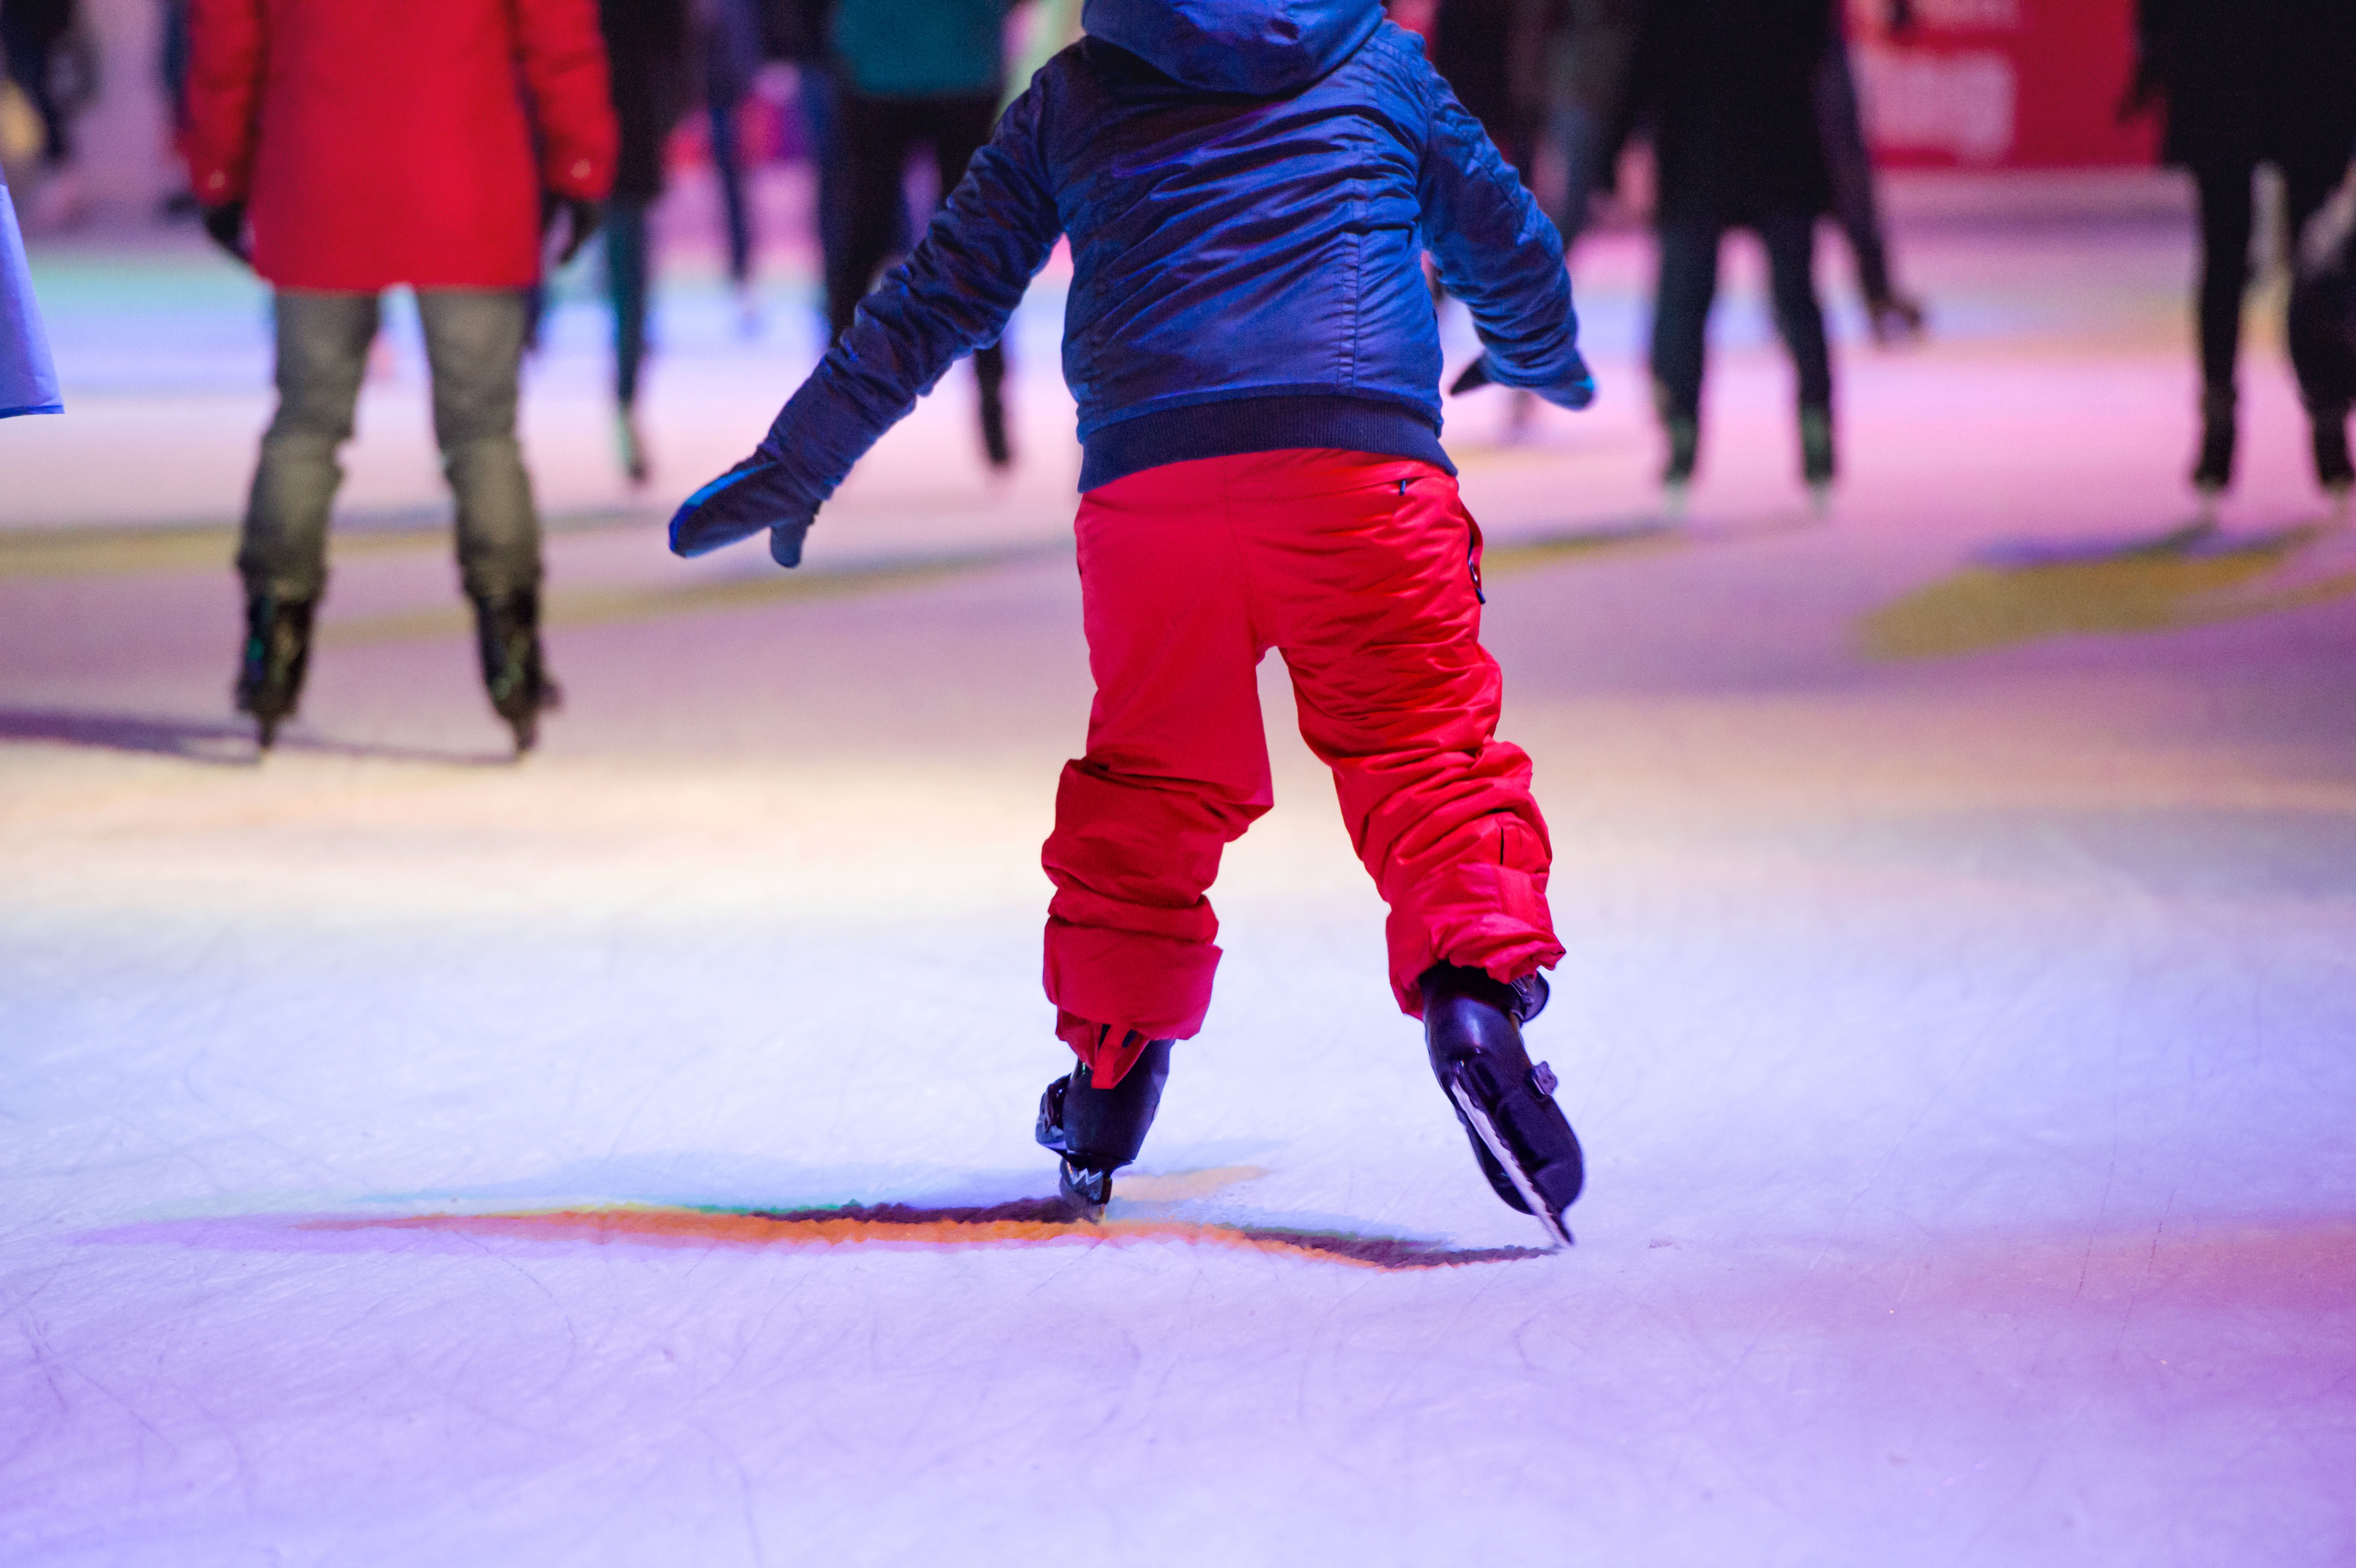 Optisport IJsverhuur: Creëer jouw ijsavontuur! Huur bij ons en geniet van een unieke schaatservaring. Kwaliteit, gemak en plezier op het ijs gegarandeerd!